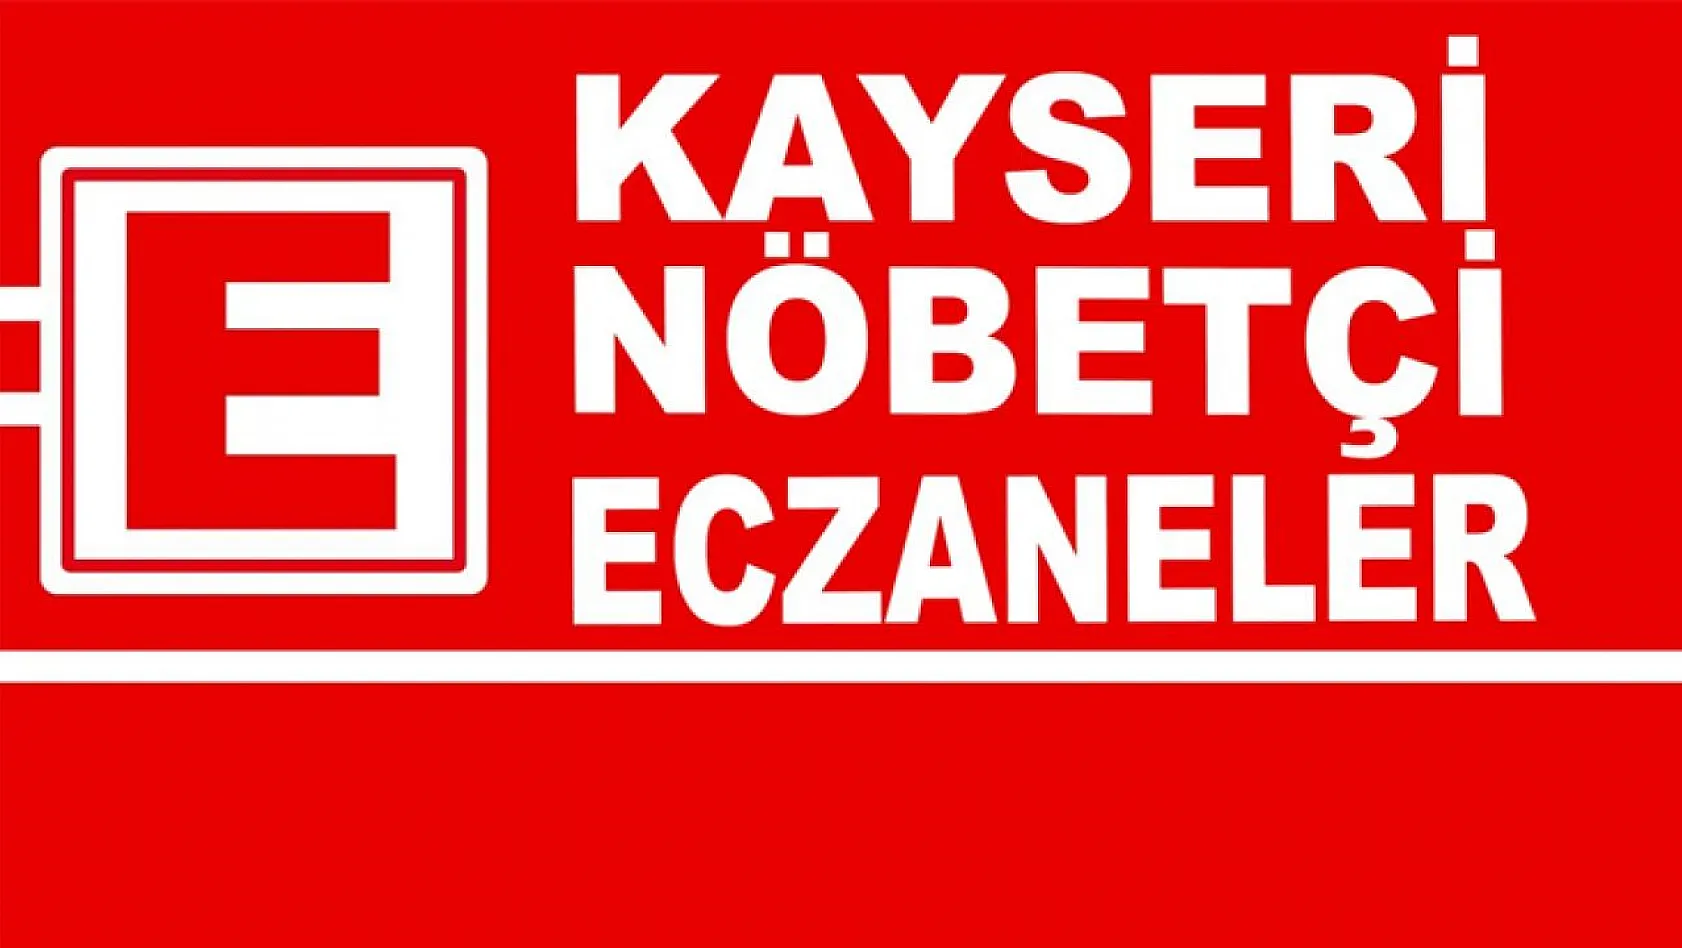 Kayseri'de Nöbetçi Eczaneler (18 Mayıs Perşembe)